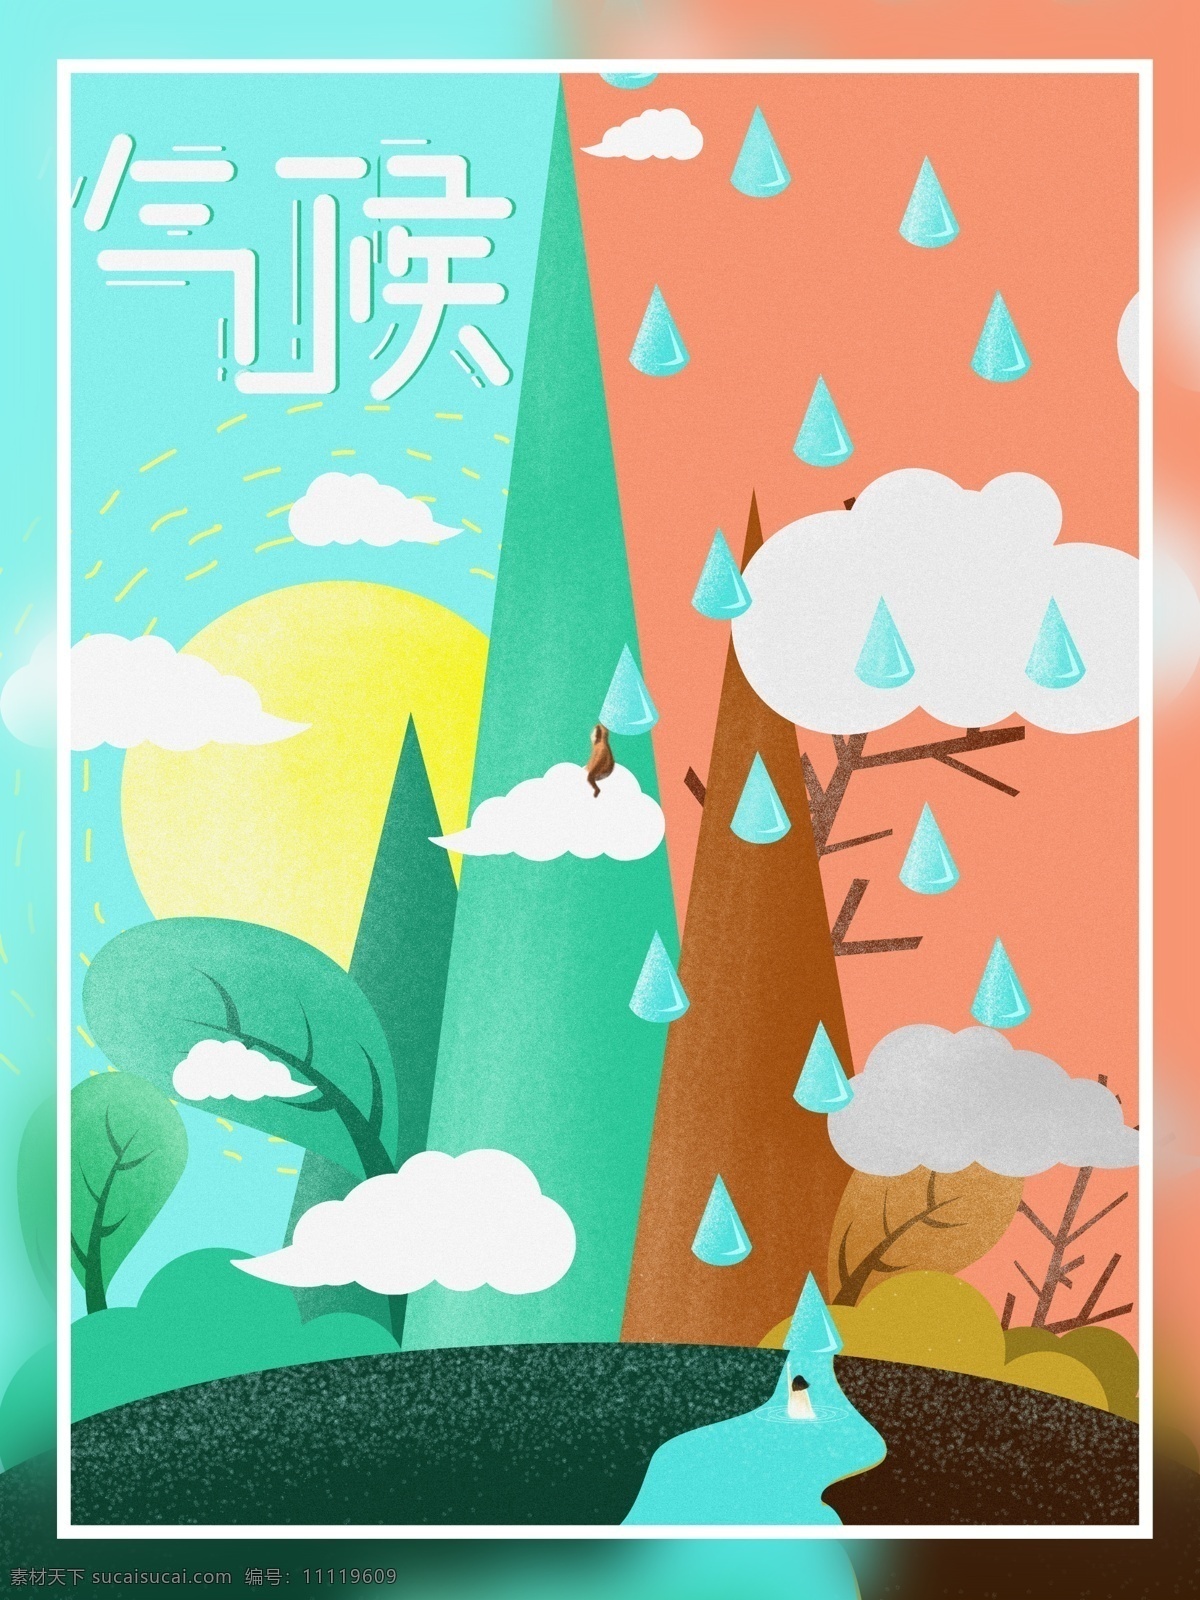 原创 插画 小 清新 气候 海报 小清新 雨水 清明 下雨 潮湿 天气 雨滴 太阳 云朵 树叶 树木 枯木 河流 女人 男人 蓝色 青绿色 橘红色